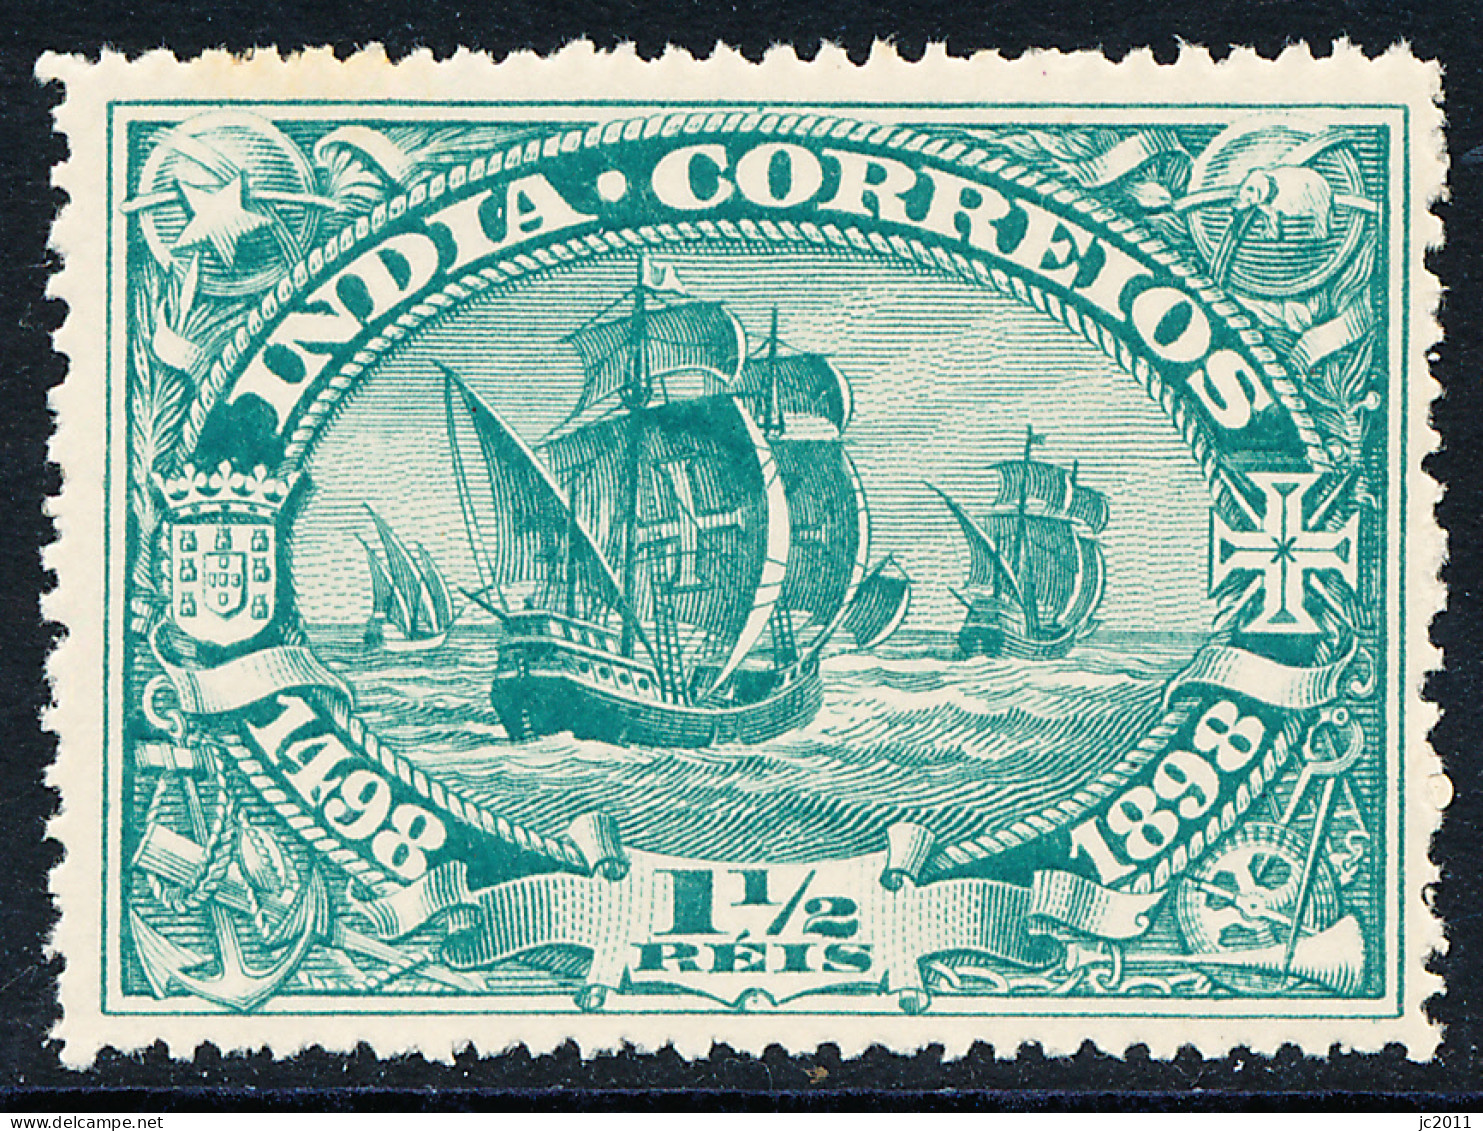 Portuguese India - 1898 - Discovery Of Route To India / Vasco Da Gama - MNH - Portuguese India